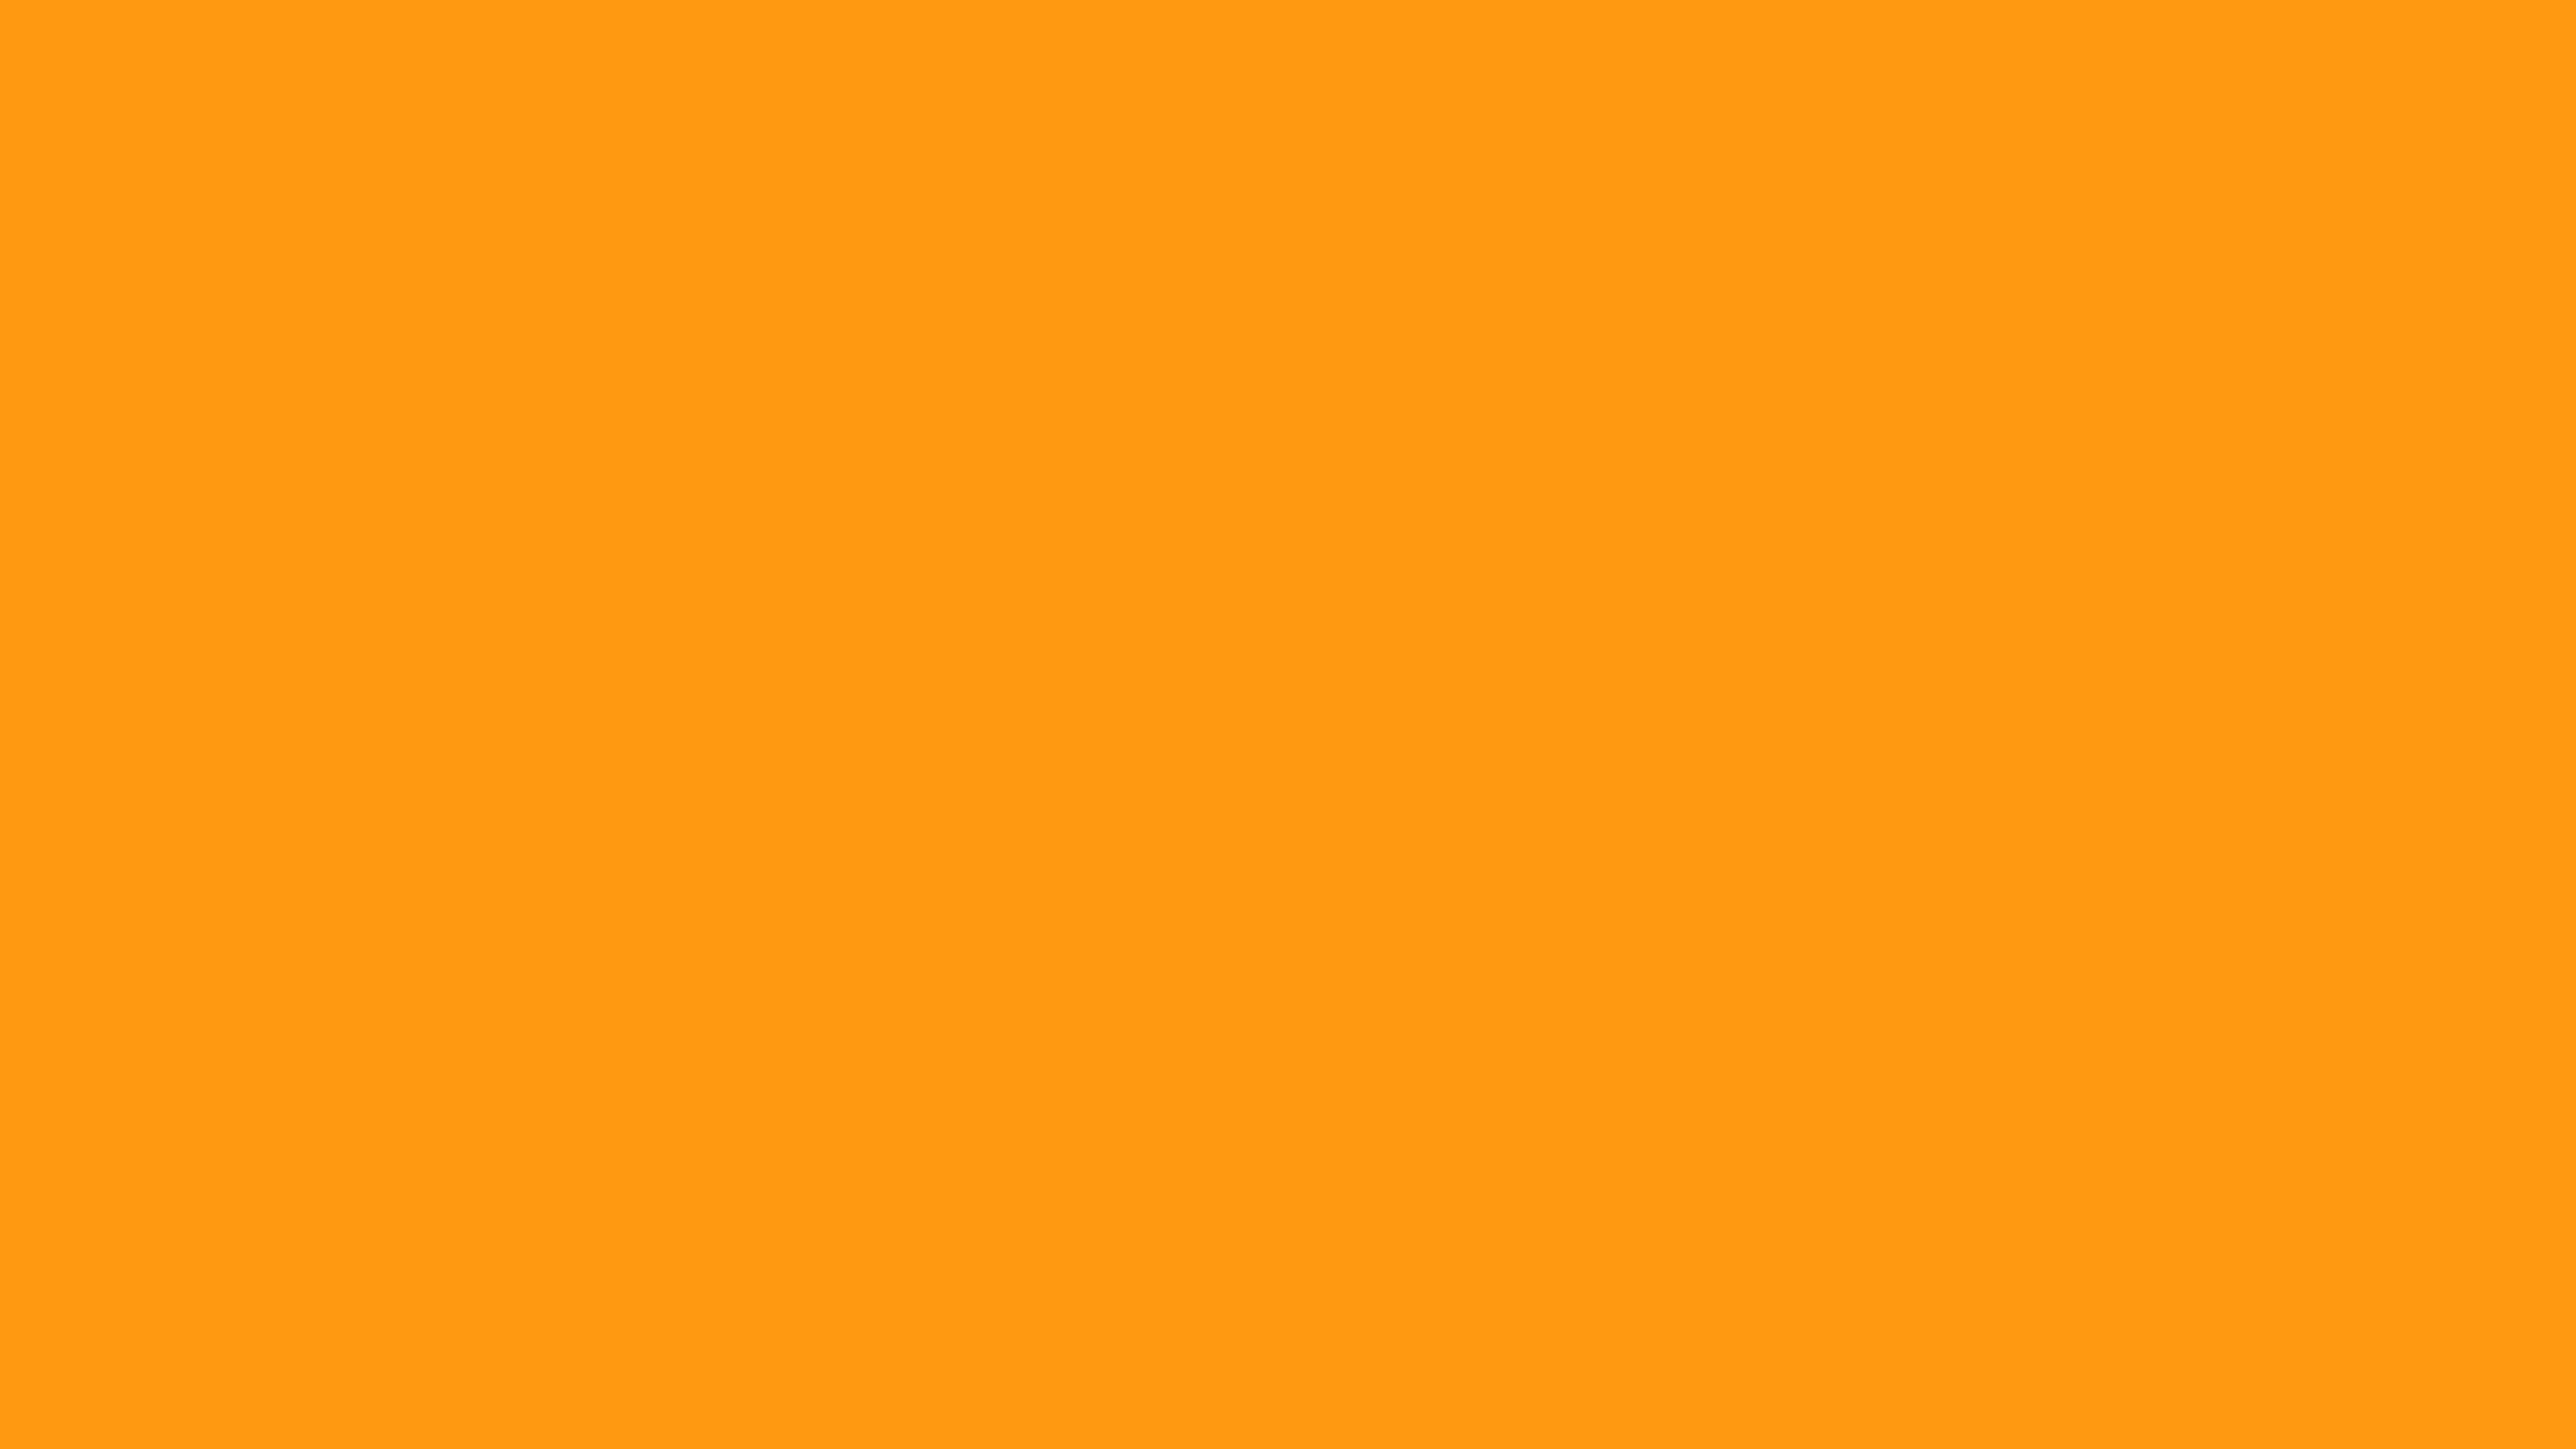 Темный оранжево желтый цвет. Охра золотистая 208. Pa16208 эмаль 208 охра золотистая 520 мл. RAL 1017 Шафраново-жёлтый. Цвет 208 охра.